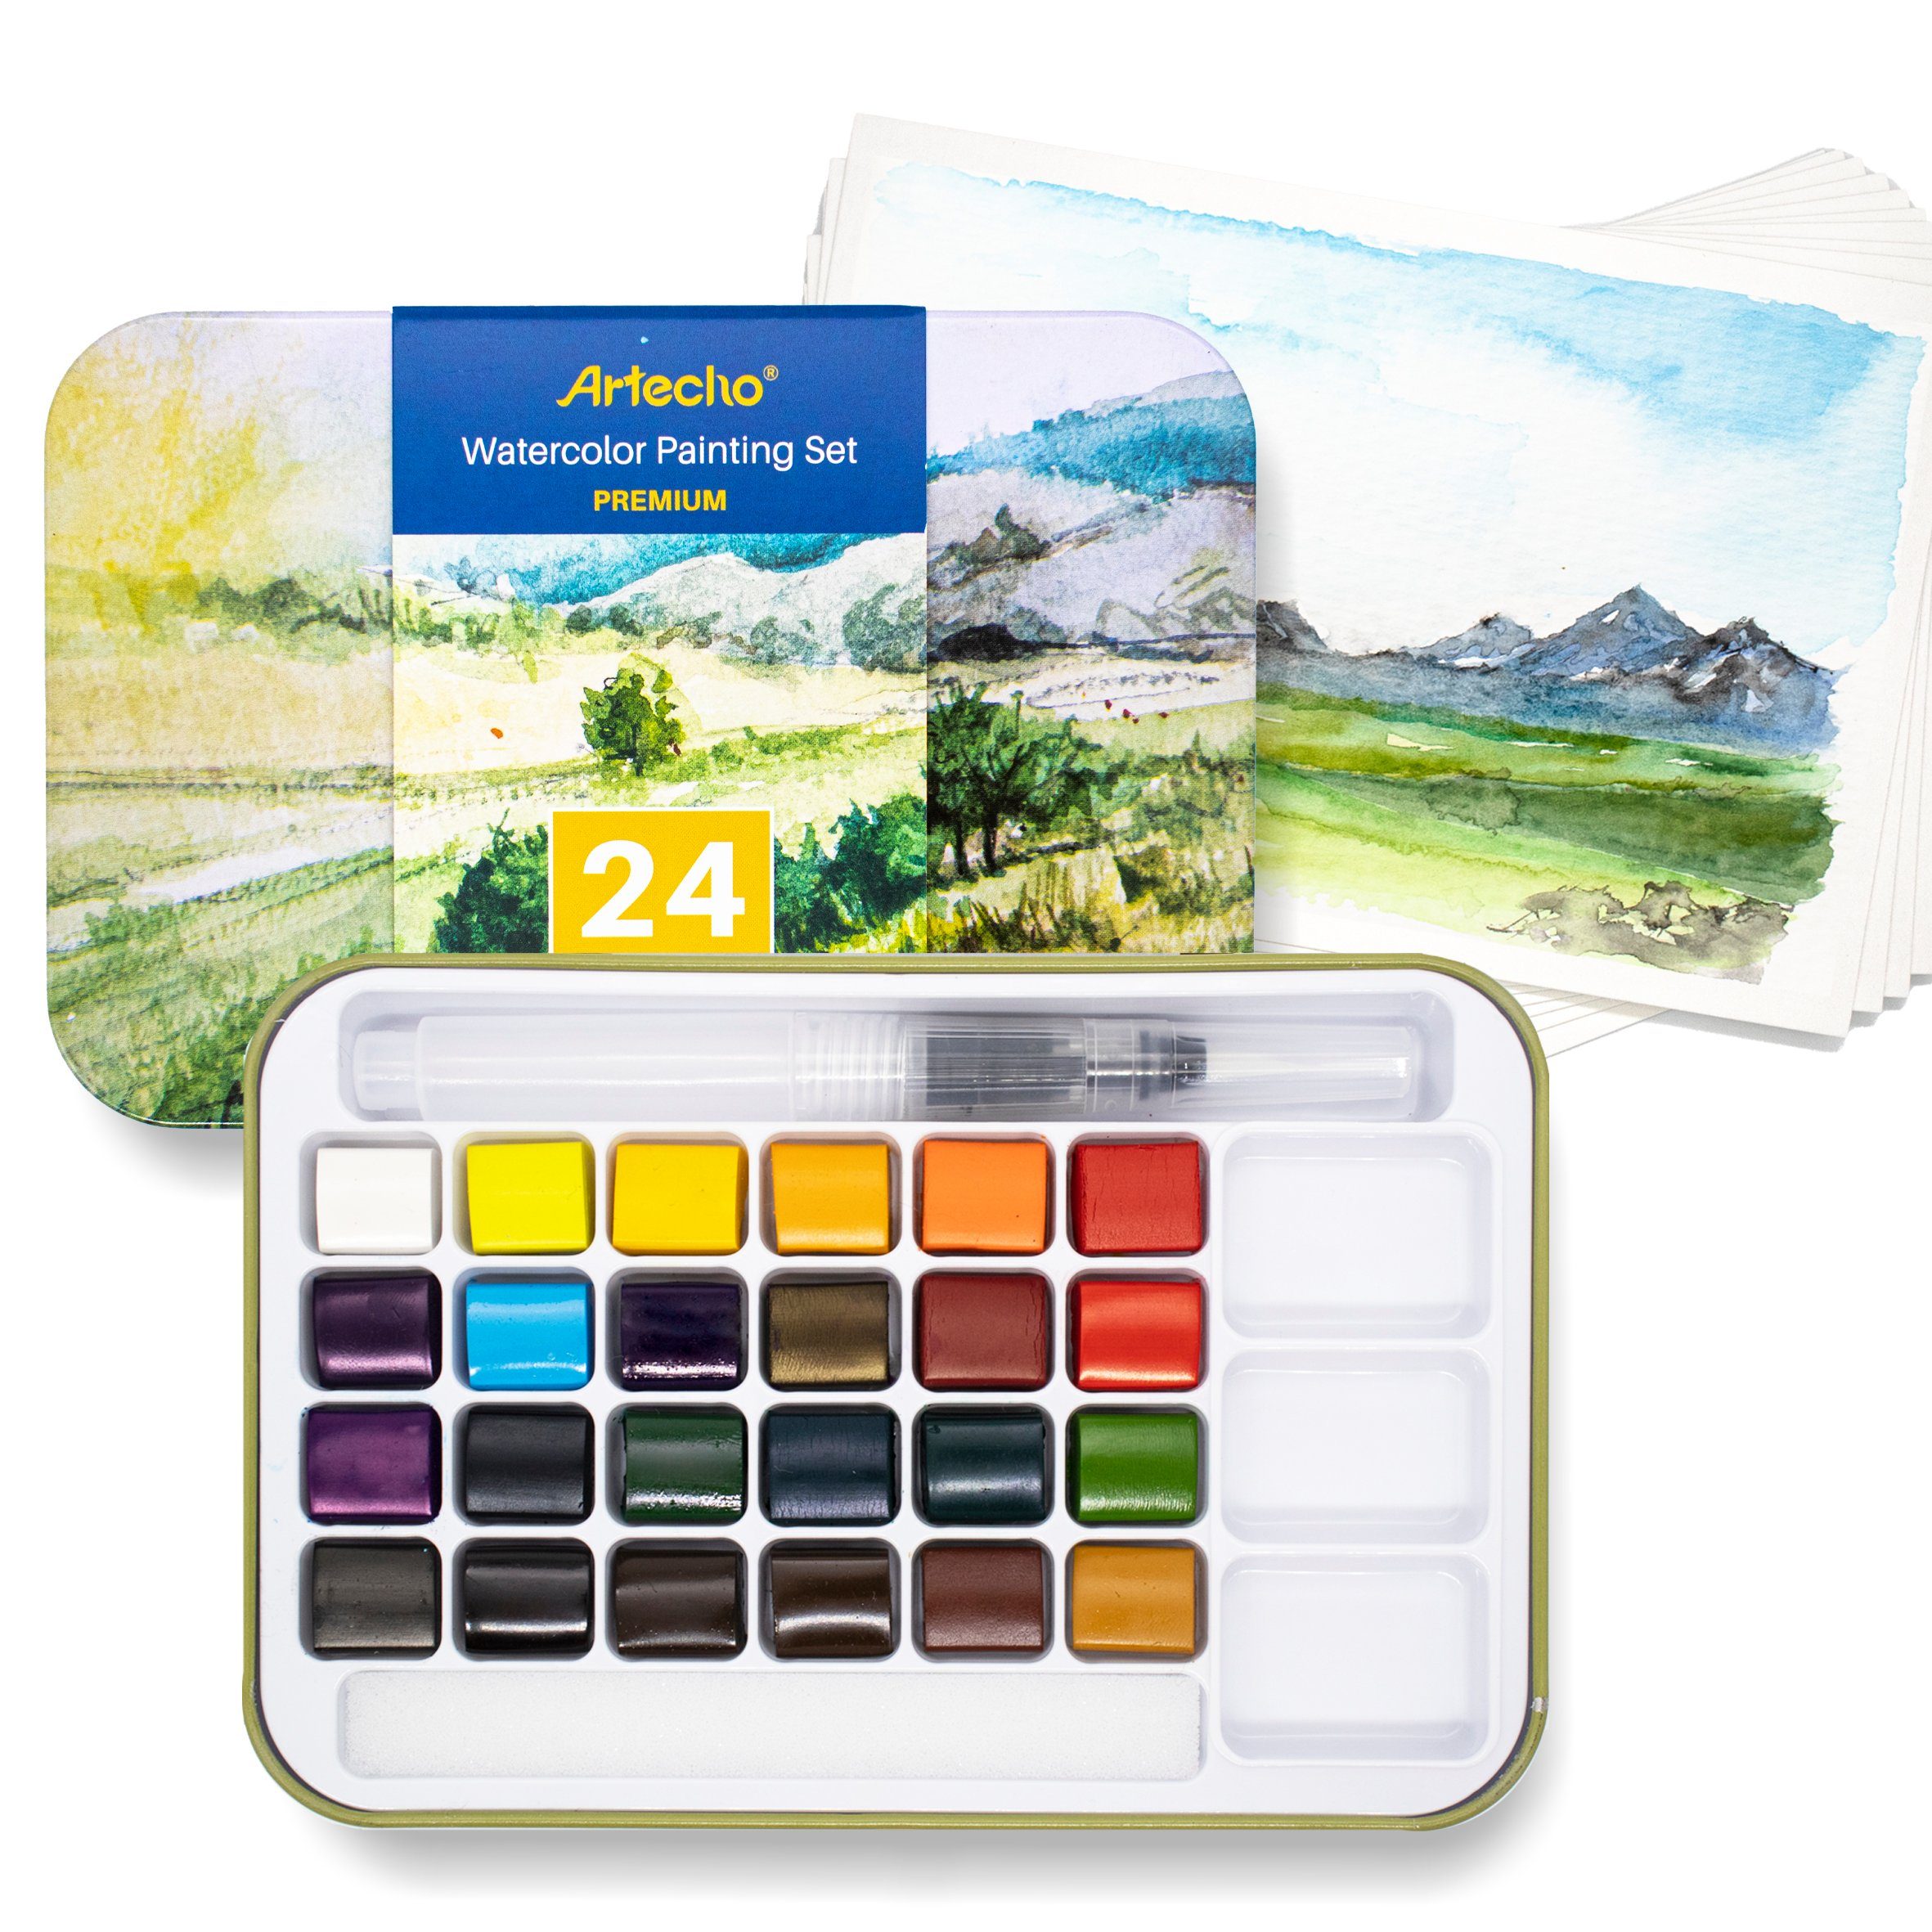 Artecho Aquarellfarbe 24 / 50 Aquarellfarben Wasserfarben mit 10 x Aquarellpapieren & Pinsel, - egal ob unterwegs, Zuhause, in der Schule - für Anfänger und Profis